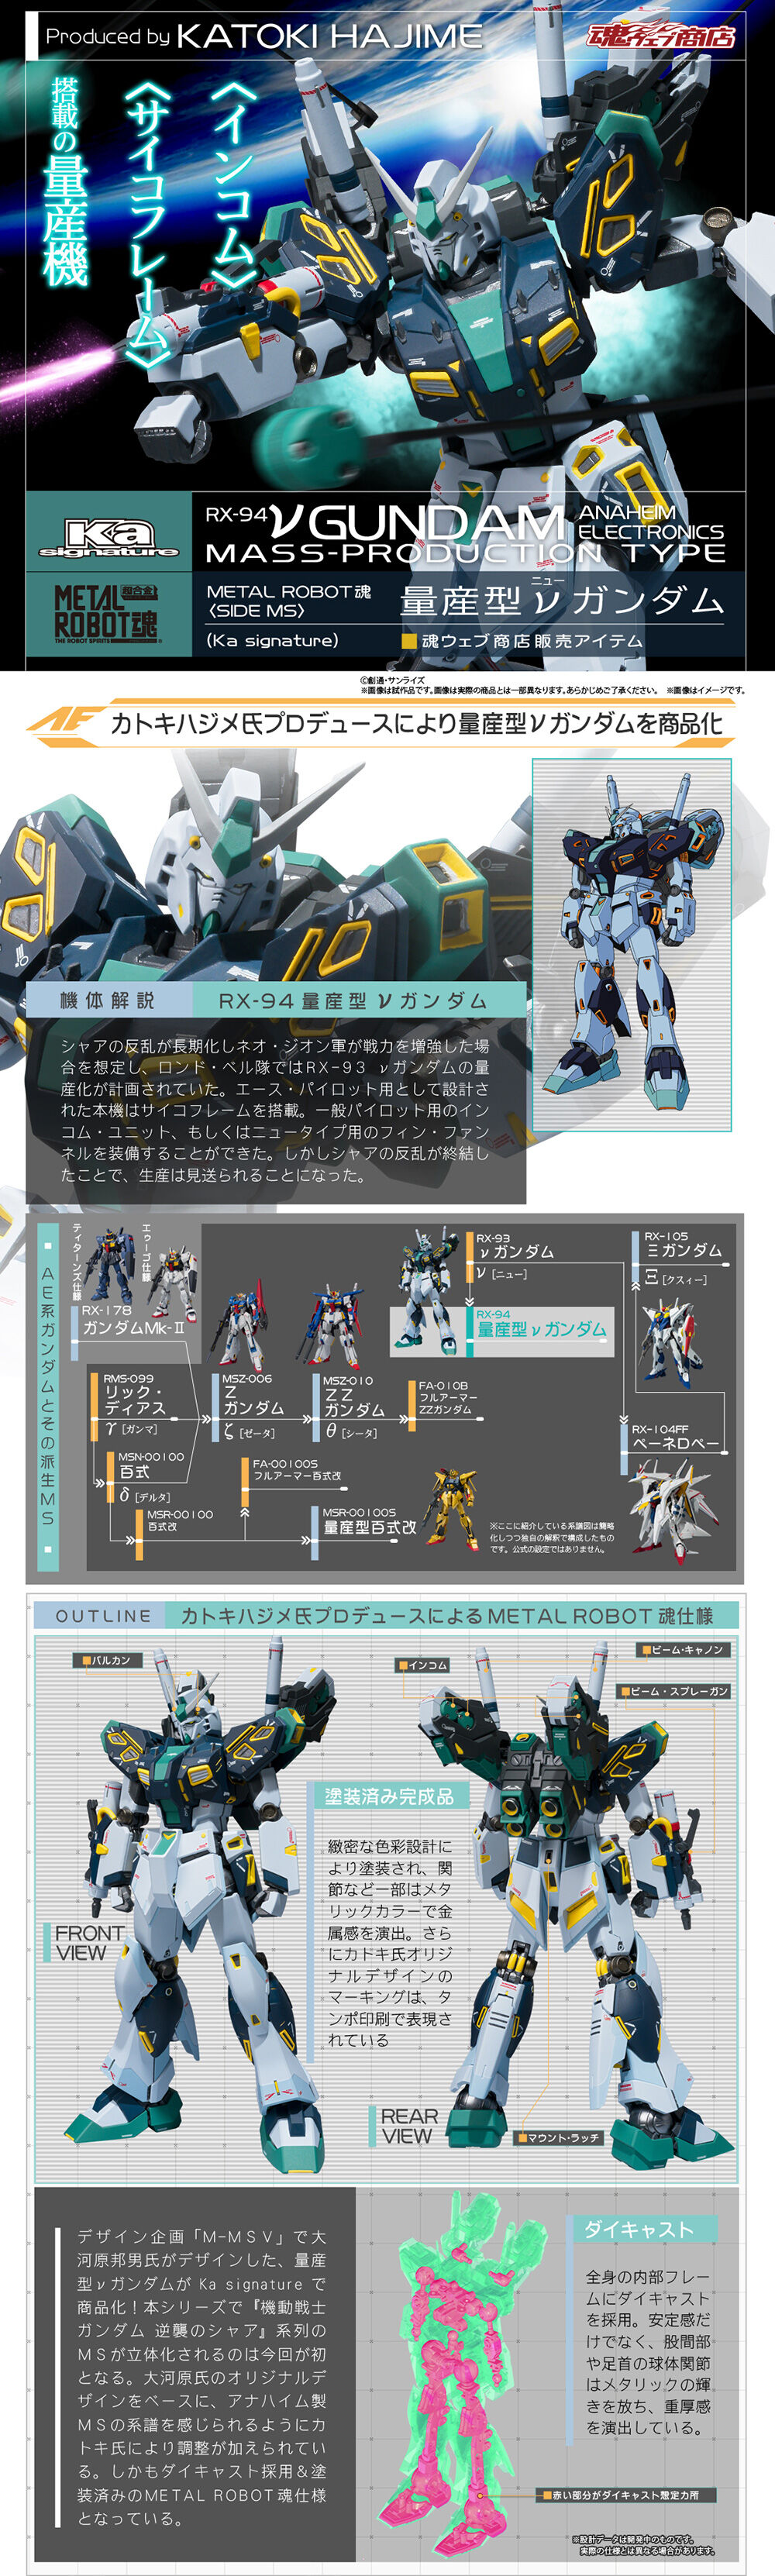 METAL ROBOT魂 (Ka signature) 量産型νガンダム - コミック/アニメ